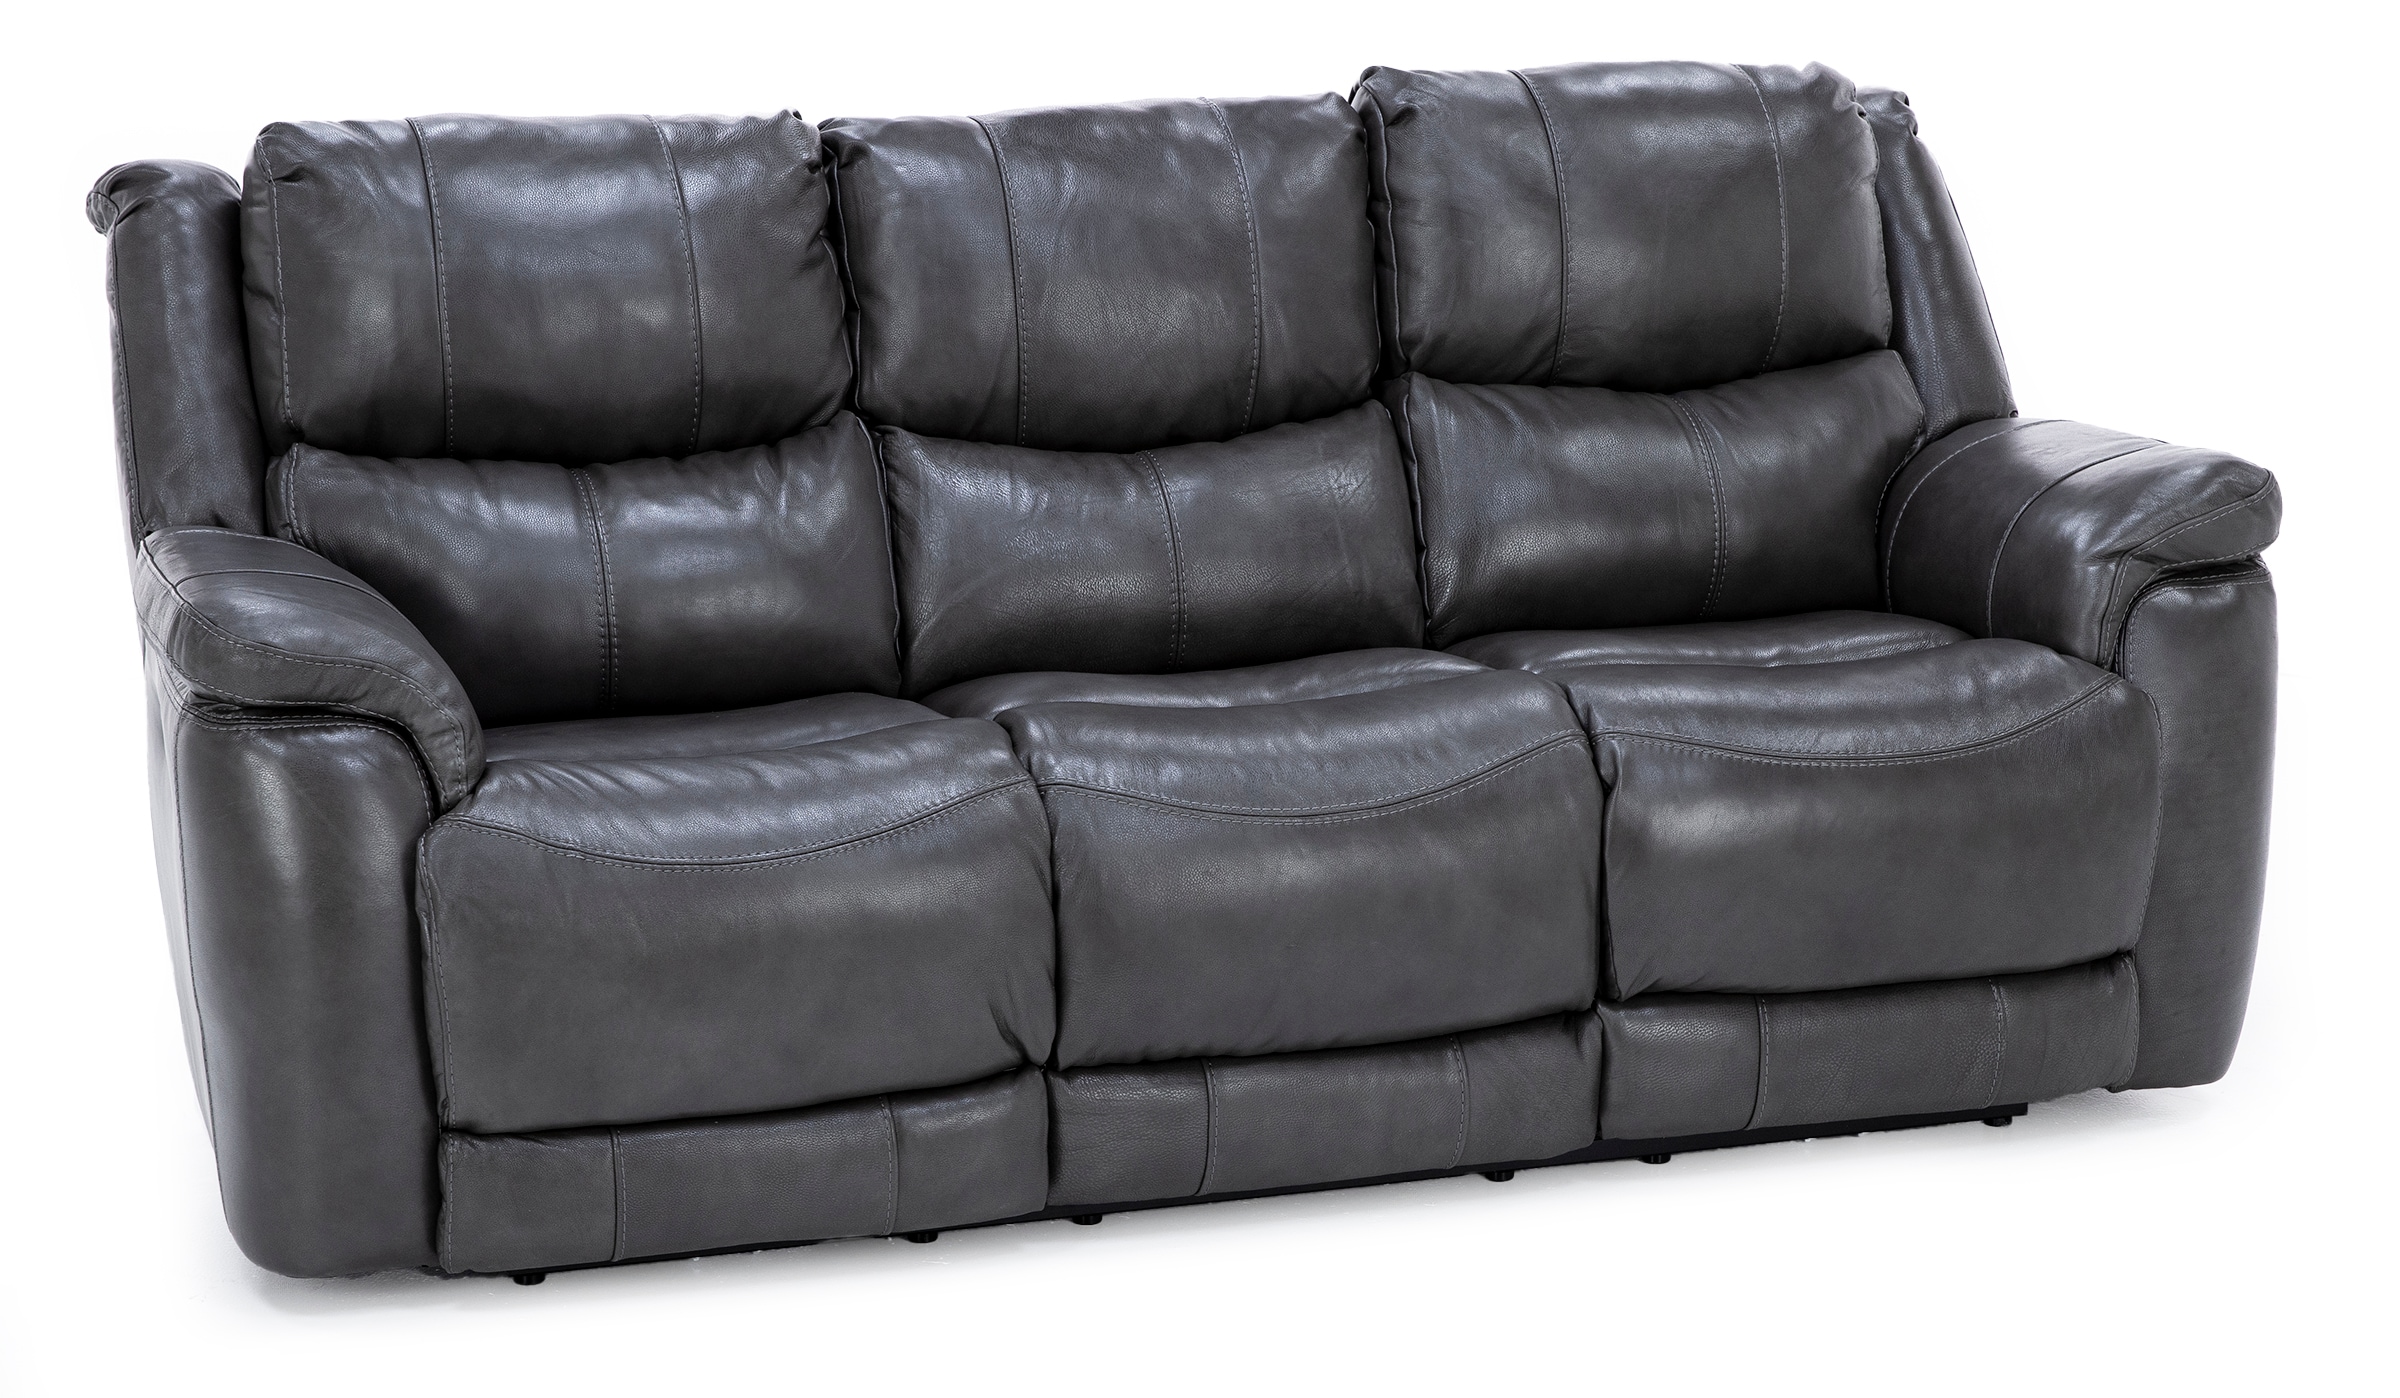 Galaxy Leather Fully Loaded Zero Gravity Reclining Sofa